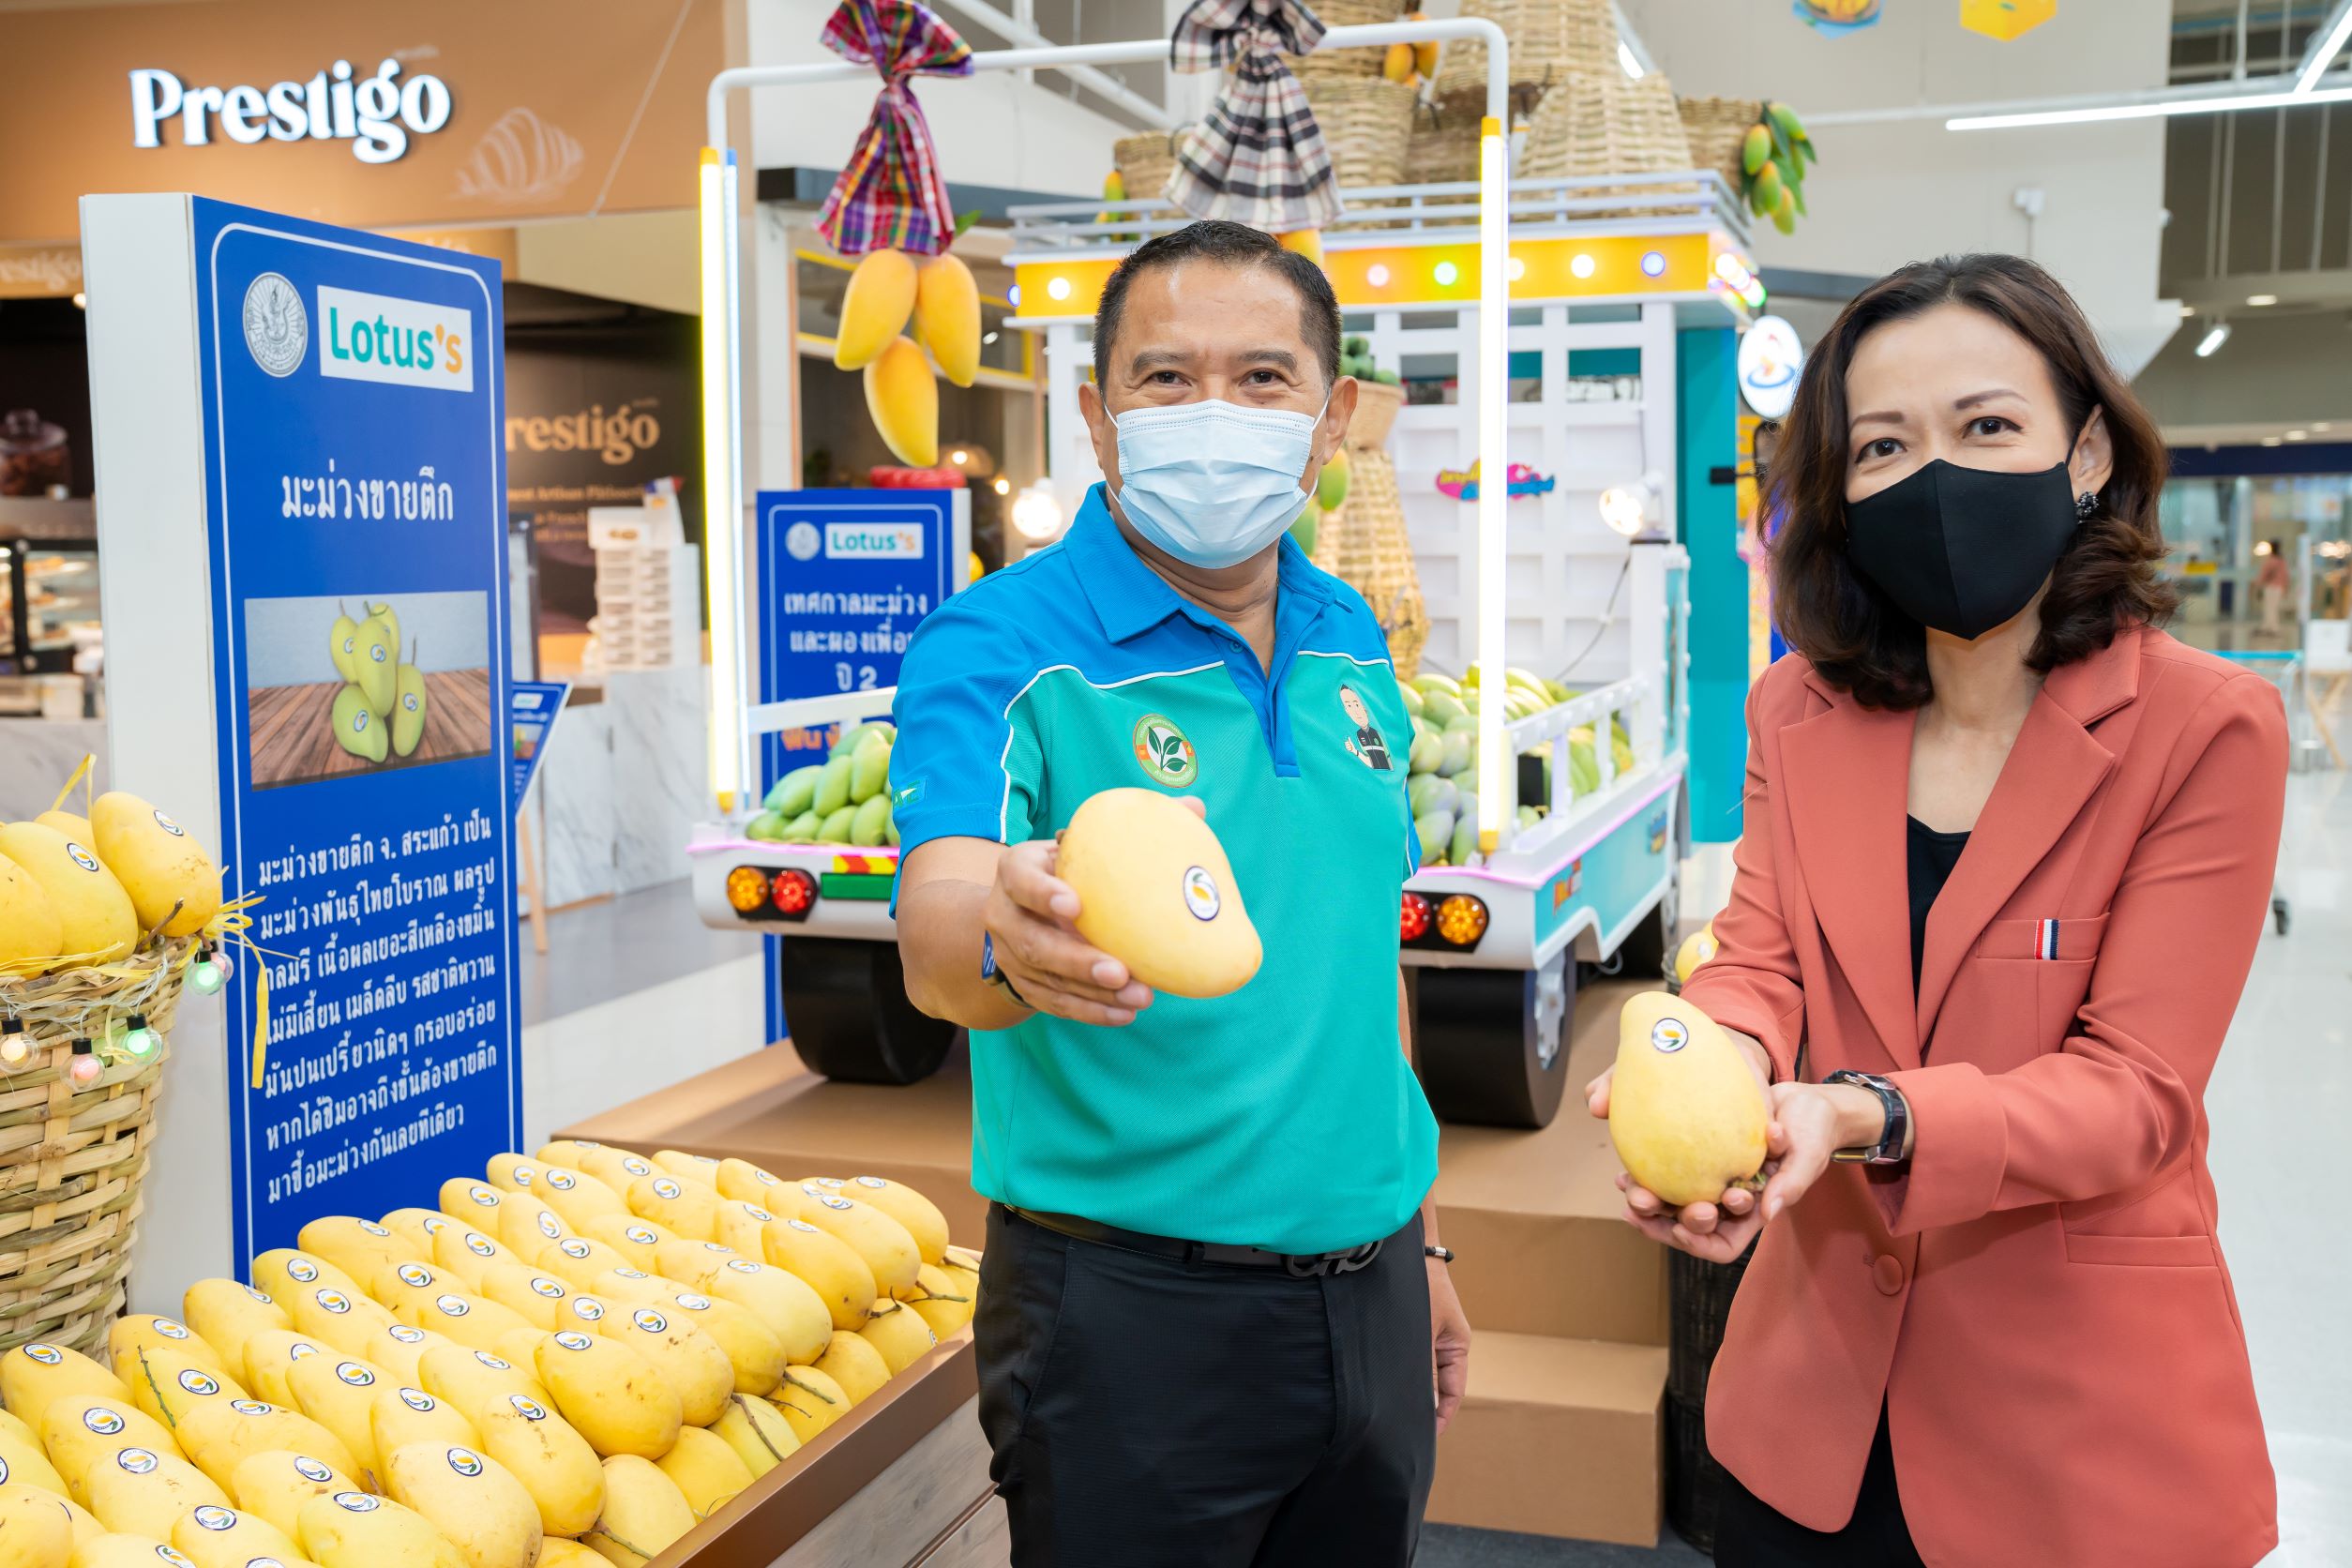 โลตัส จัด“เทศกาลผลไม้ไทย” รับซื้อมะม่วงกว่า 20 สายพันธุ์ตรงจากเกษตรกร รวมกว่า 5 ล้านกิโลกรัม พร้อมเมนูผลไม้เด็ดจาก SME